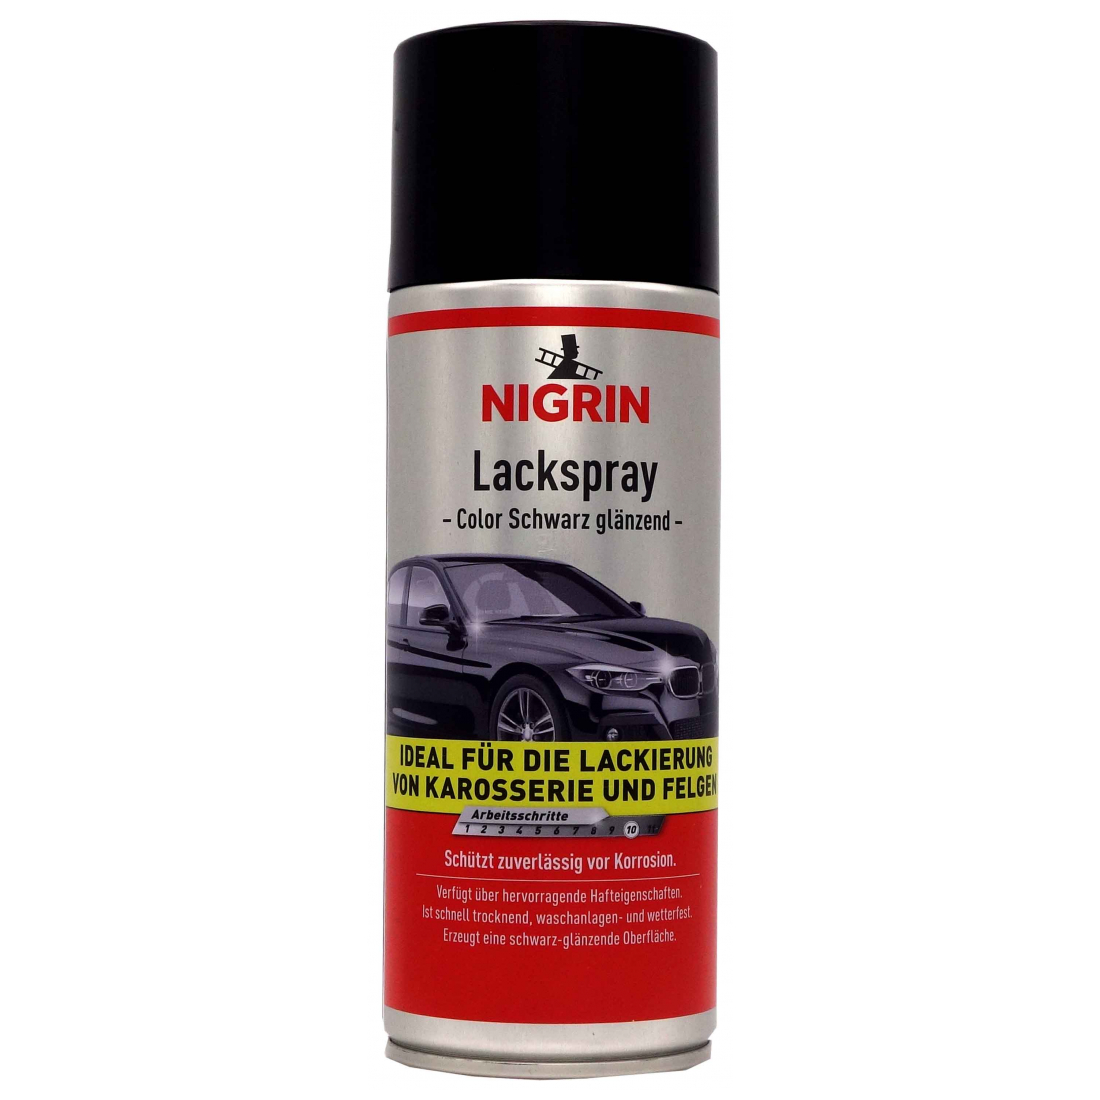 NIGRIN Lackspray schwarz glänzend 400 ml 74113